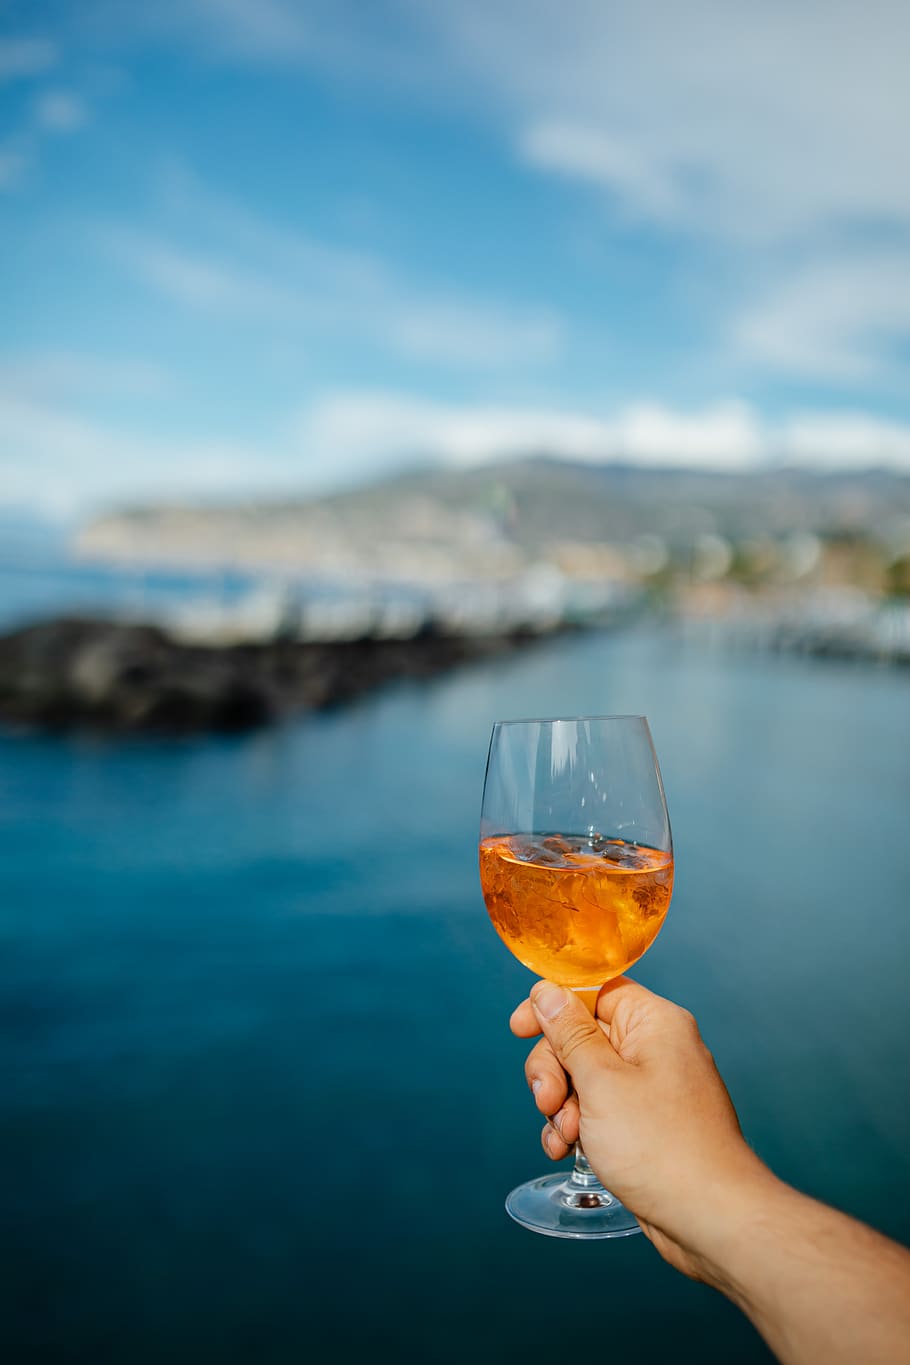 alcohol, italia, bebida, italiano, sorrento, vacaciones, mar, mediterraneo, verano, bebidas